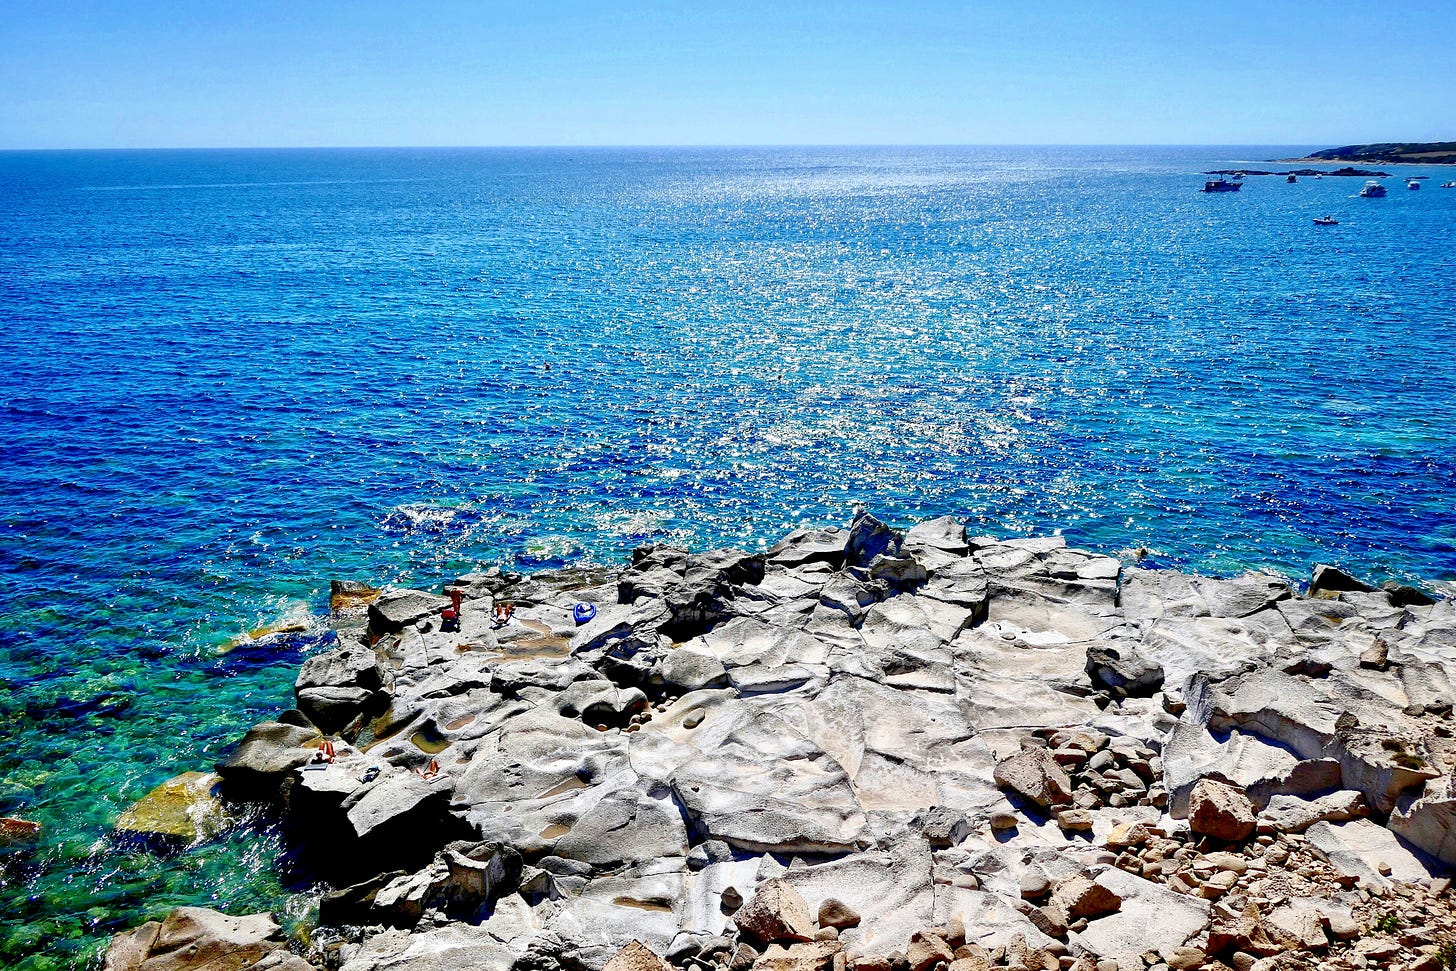 propaggie rocciosa dell'isola di Carloforte che si protente nel mare azzurro, con l'orizzonte sullo sfondo